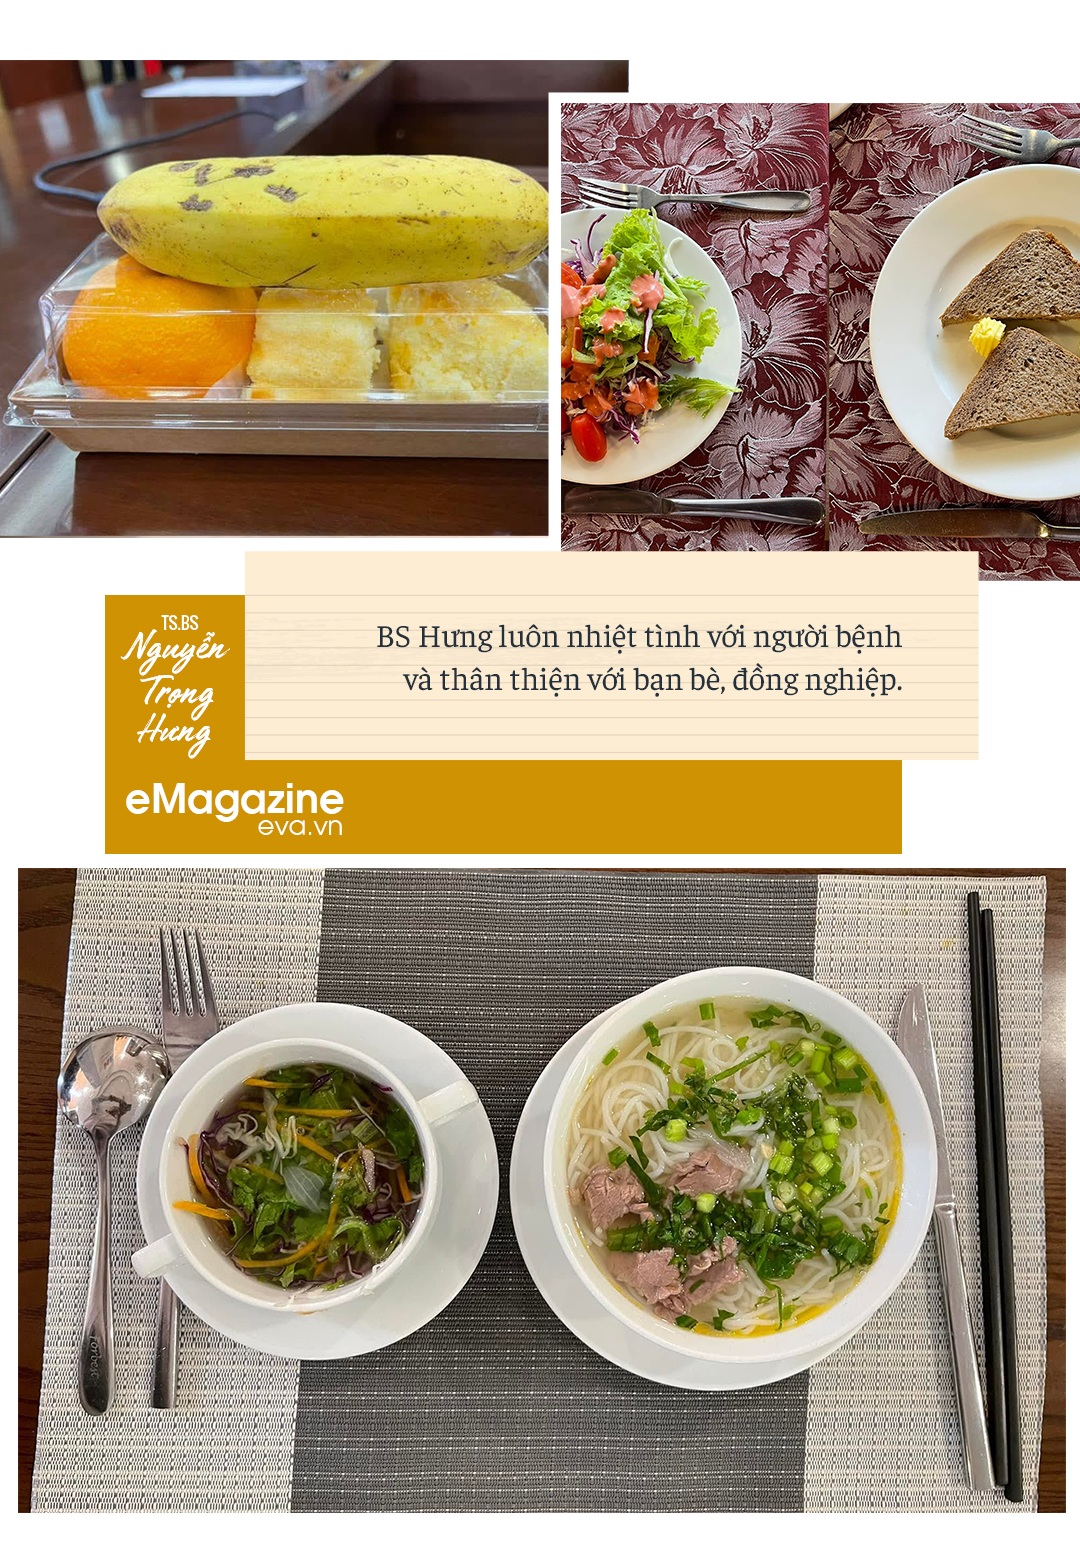 Tiến sĩ dinh dưỡng du học Nhật về chỉ thích ăn kiểu Việt và quy tắc ăn uống 80-20 để không bao giờ thừa cân - 18